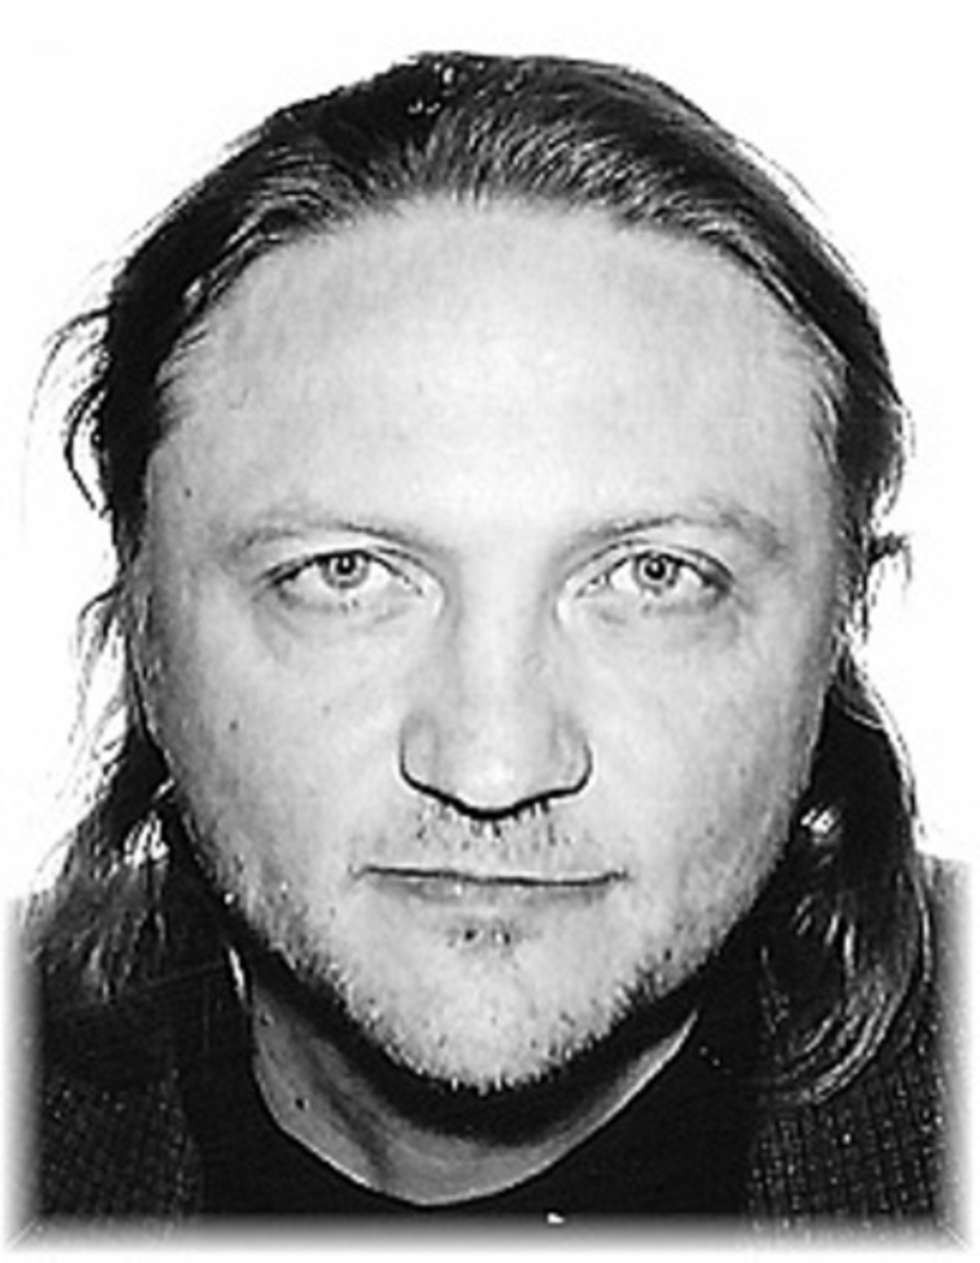  <p class="Normal">Dariusz Piotr Nowak</p>
<p class="Normal">Urodzony w 1967 roku, ostatnio zameldowany przy ul. Trembeckiego 8 w Puławach. Poszukiwany za oszustwo.&nbsp;</p>